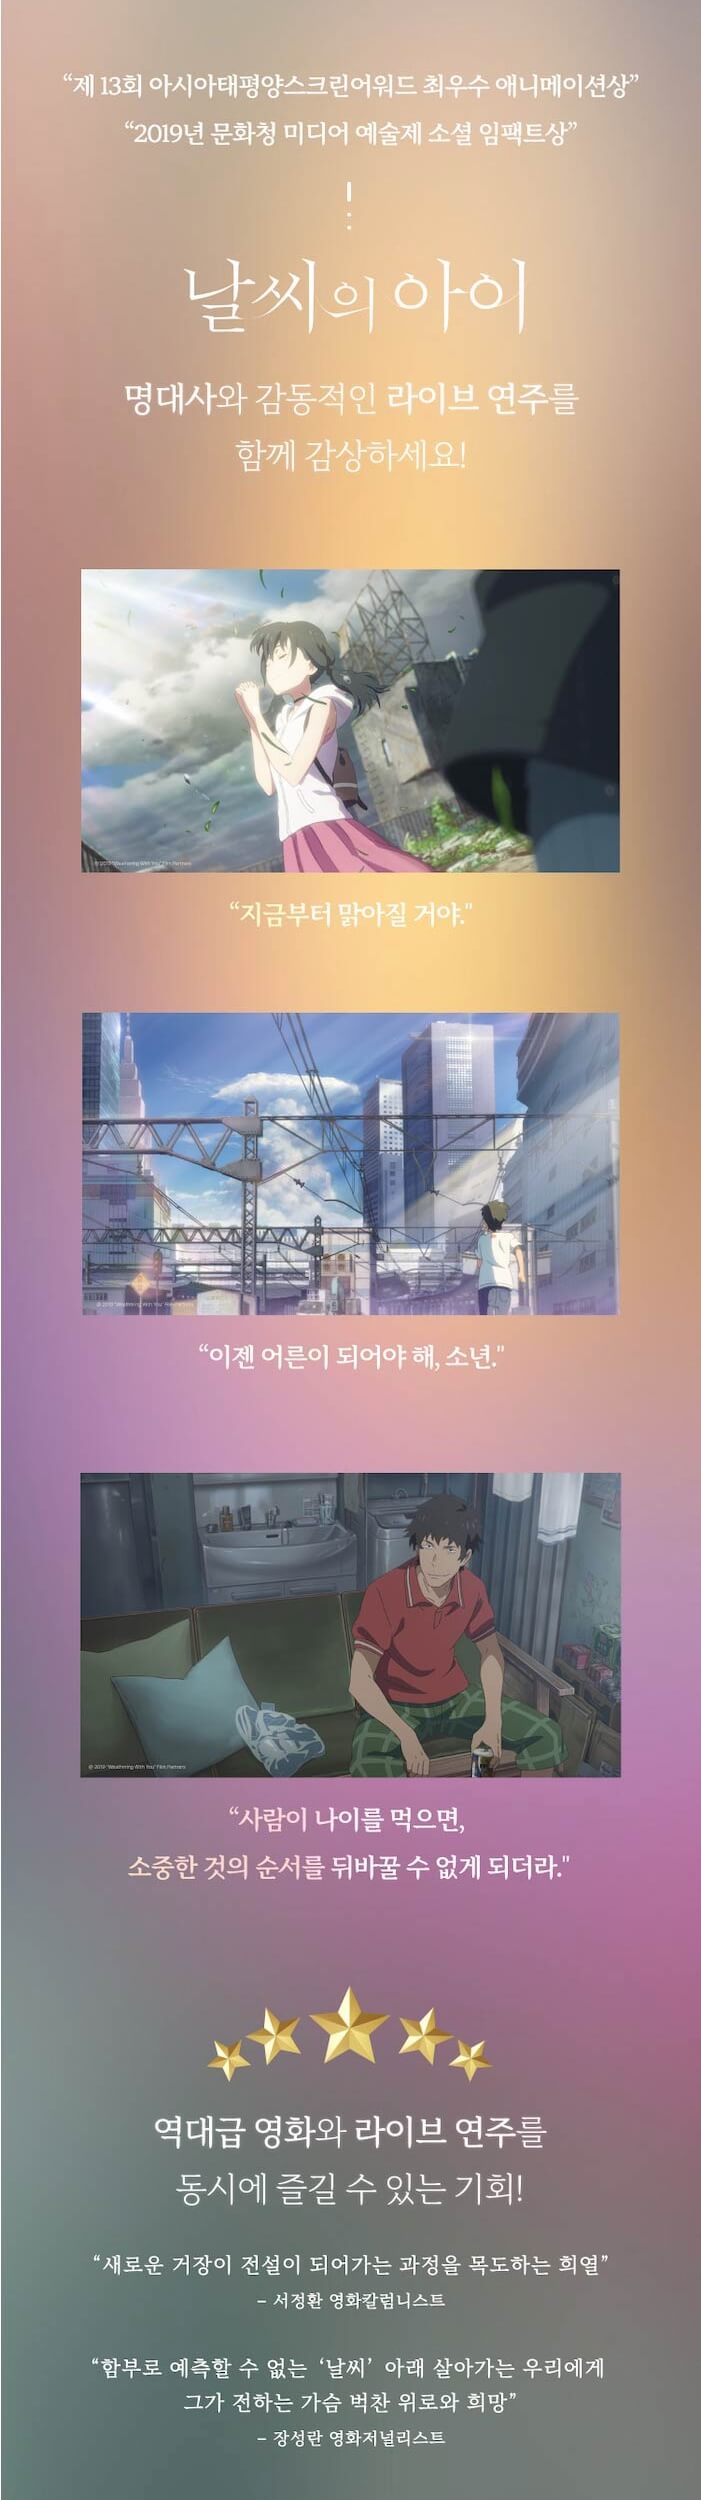 날씨의 아이 필름콘서트 서울 앙코르 공연 소개